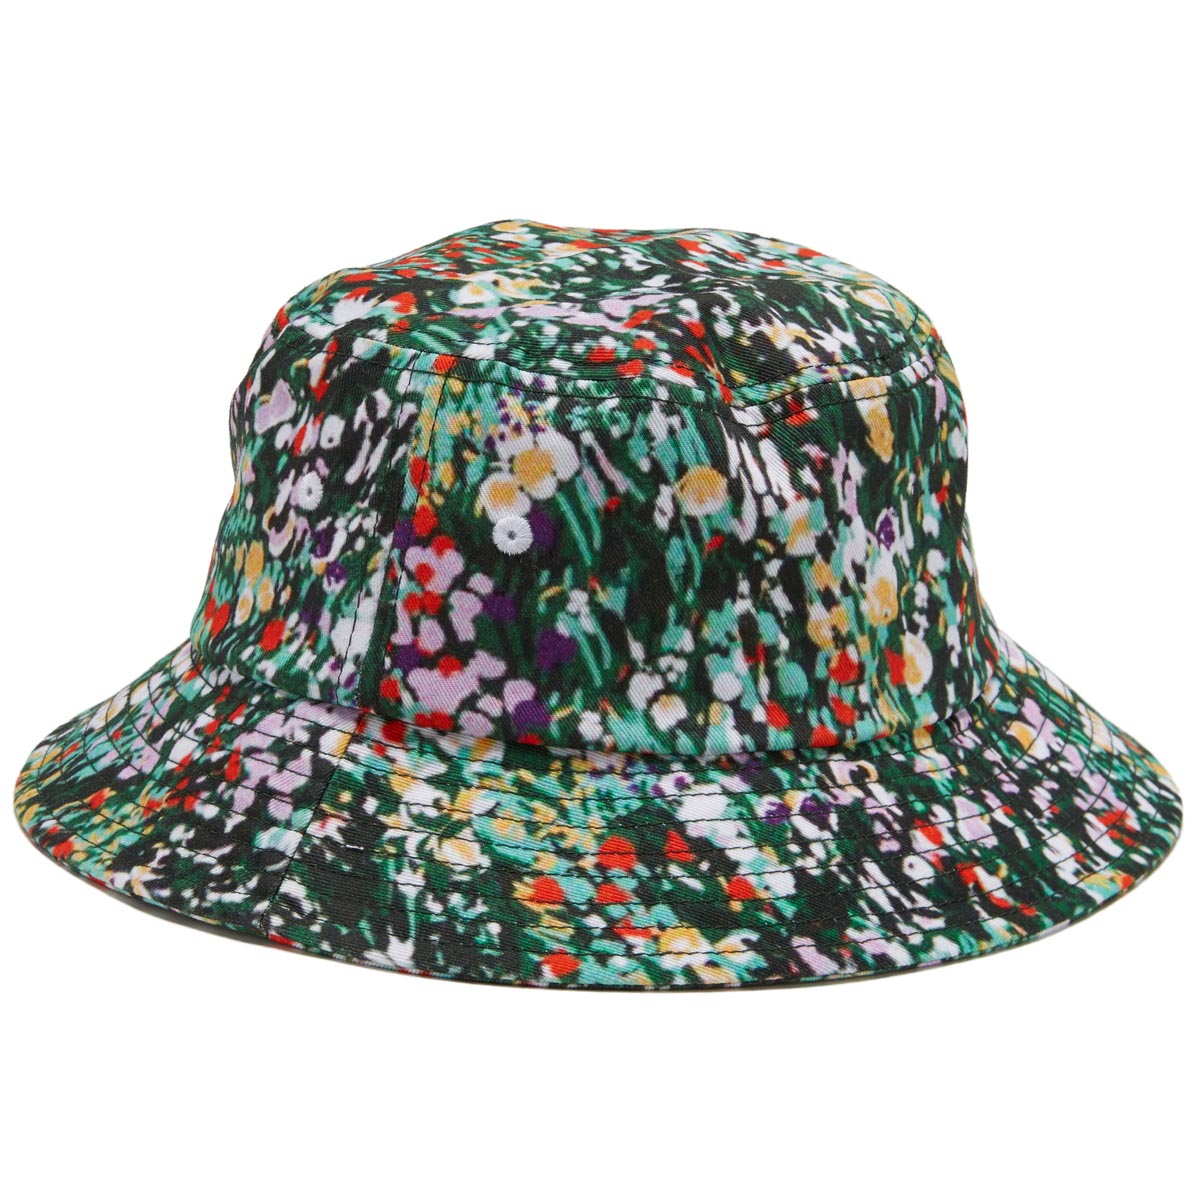 Obey Garden Bucket Hat - Green Multi image 2